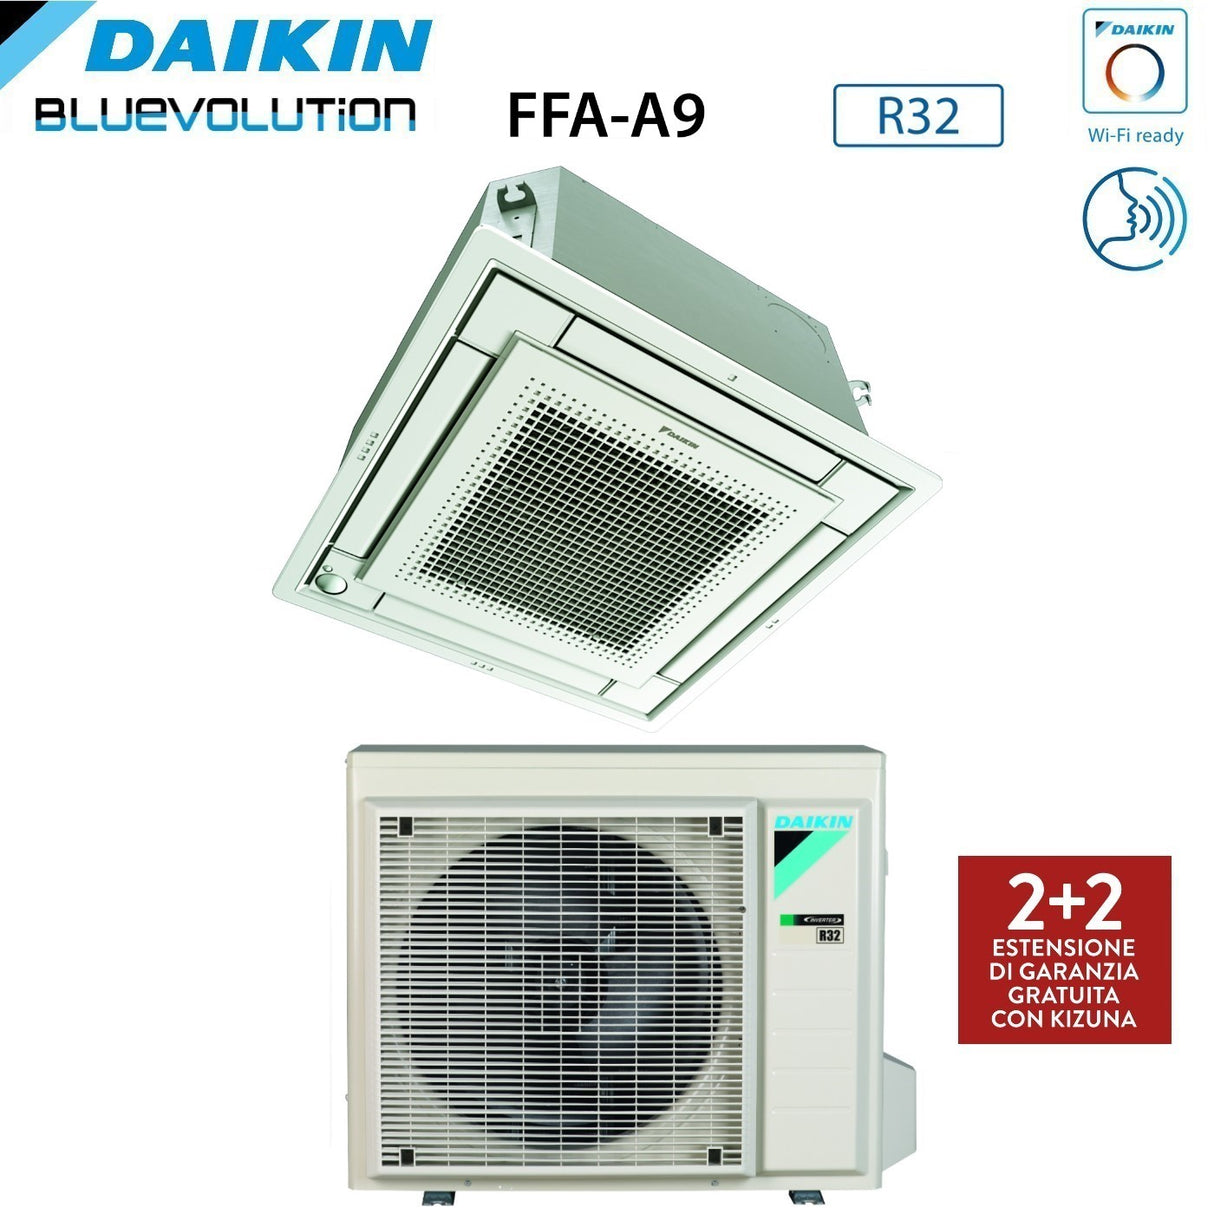 immagine-26-daikin-climatizzatore-condizionatore-daikin-a-cassetta-fully-flat-9000-btu-ffa25a9-r-32-wi-fi-optional-con-griglia-inclusa-classe-aa-garanzia-italiana